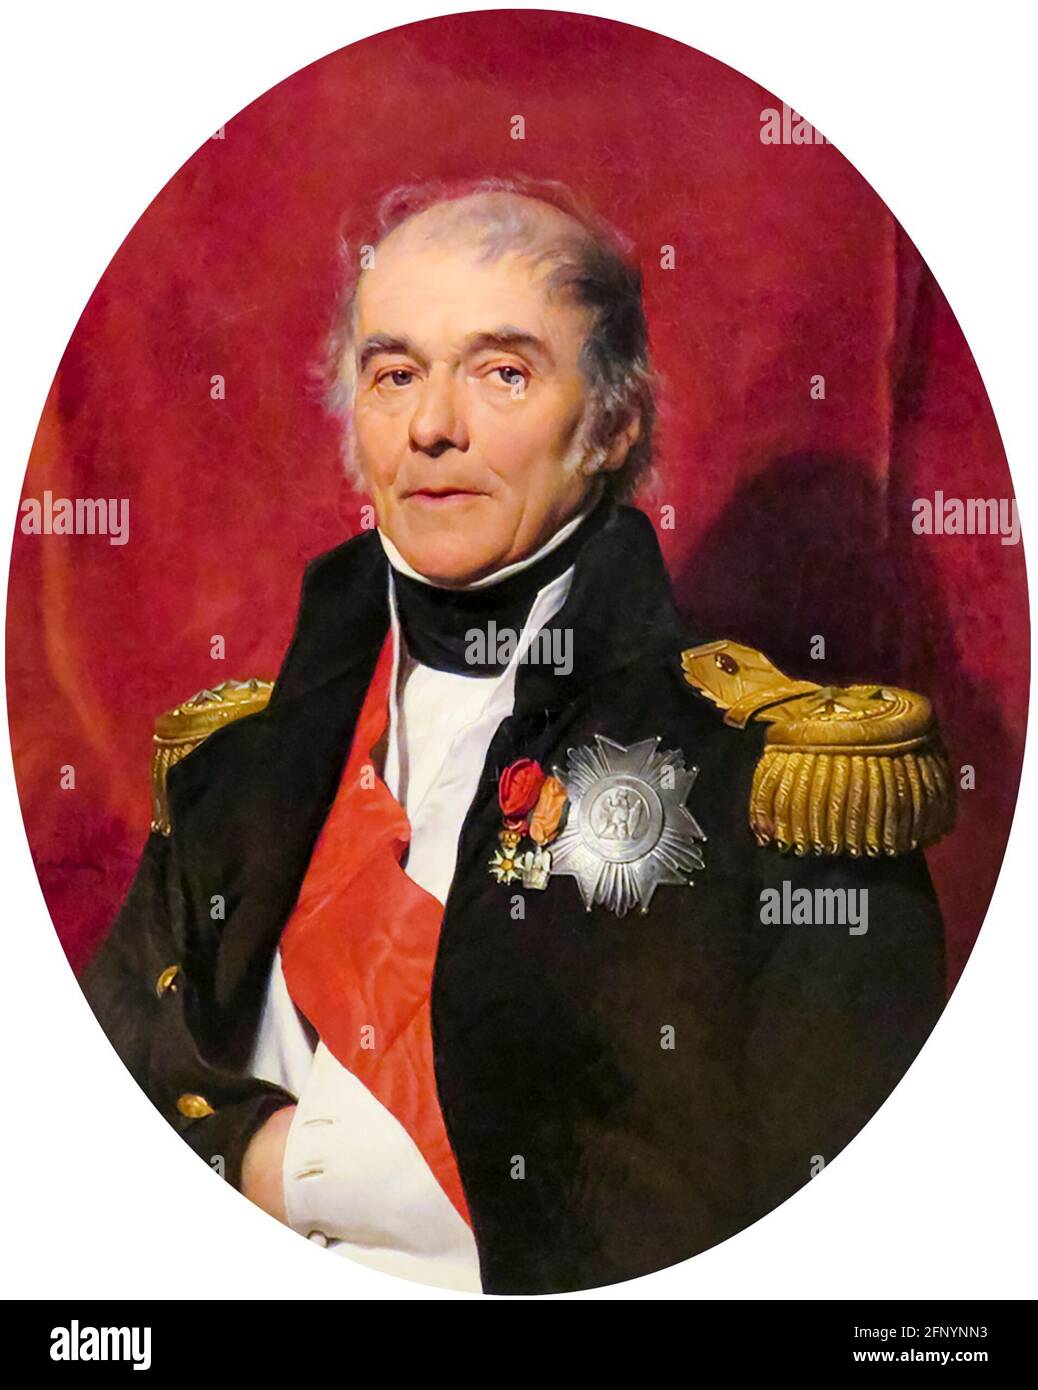 Henri-Gatien, comte Bertrand (1773-1844), est un général français, portrait peint par Paul Delaroche, vers 1840 Banque D'Images